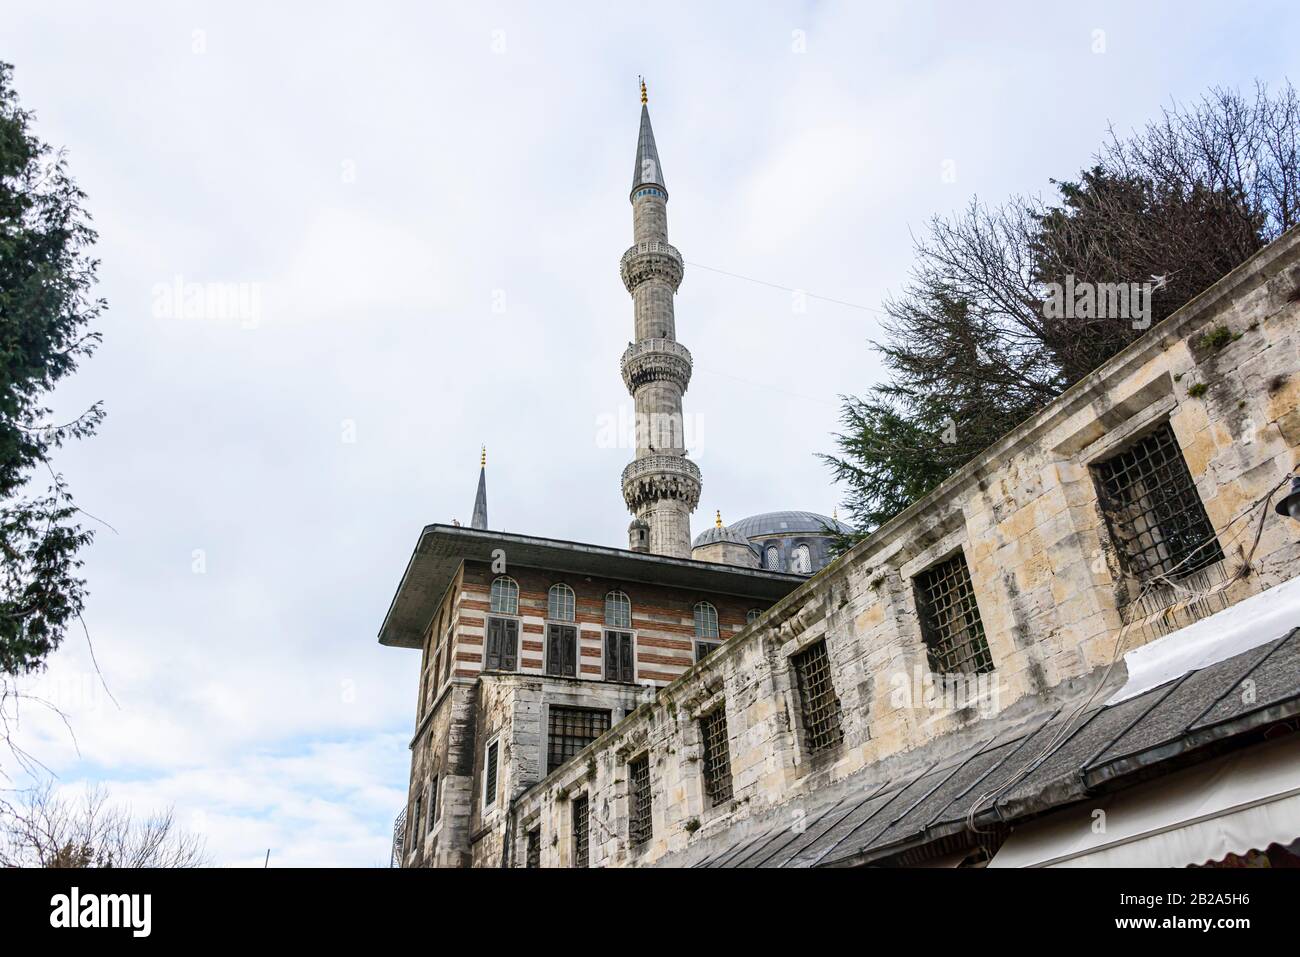 Minarete vor der Blauen Moschee, Istanbul, Türkei Stockfoto